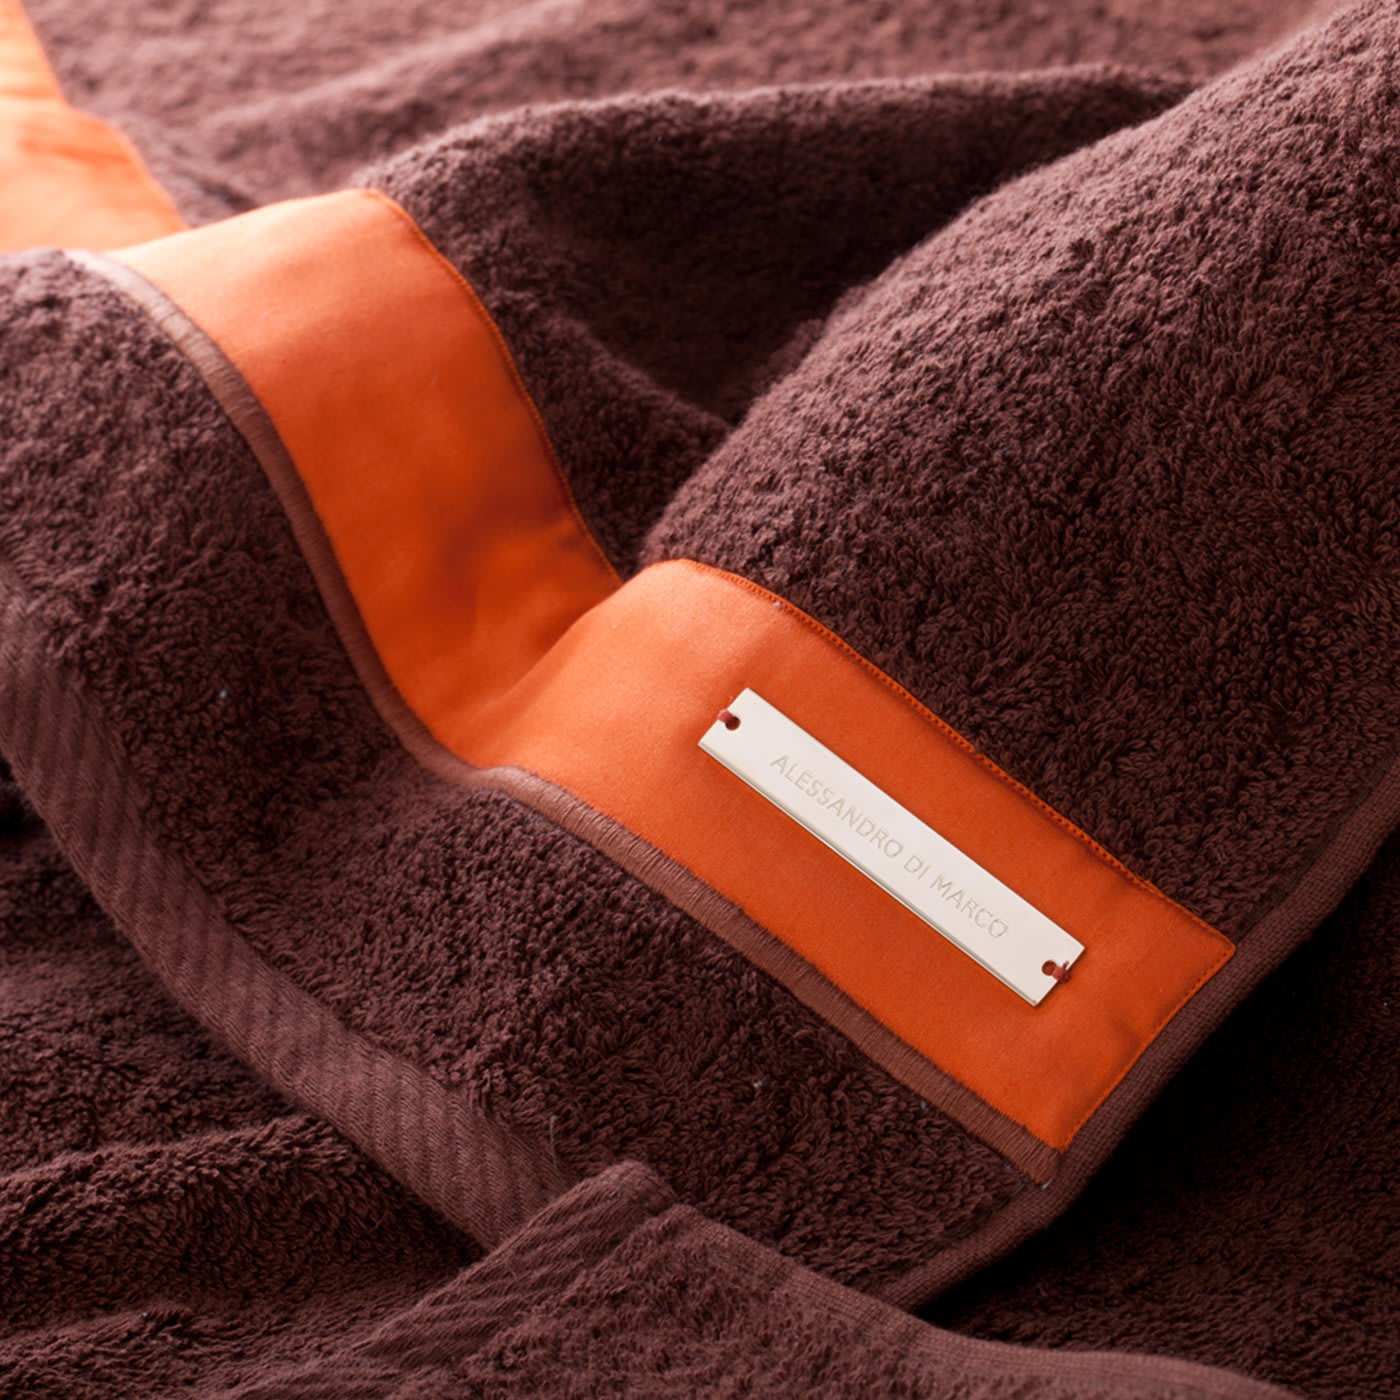 Toalla de baño naranja, juego de toallas de baño naranja, toallas